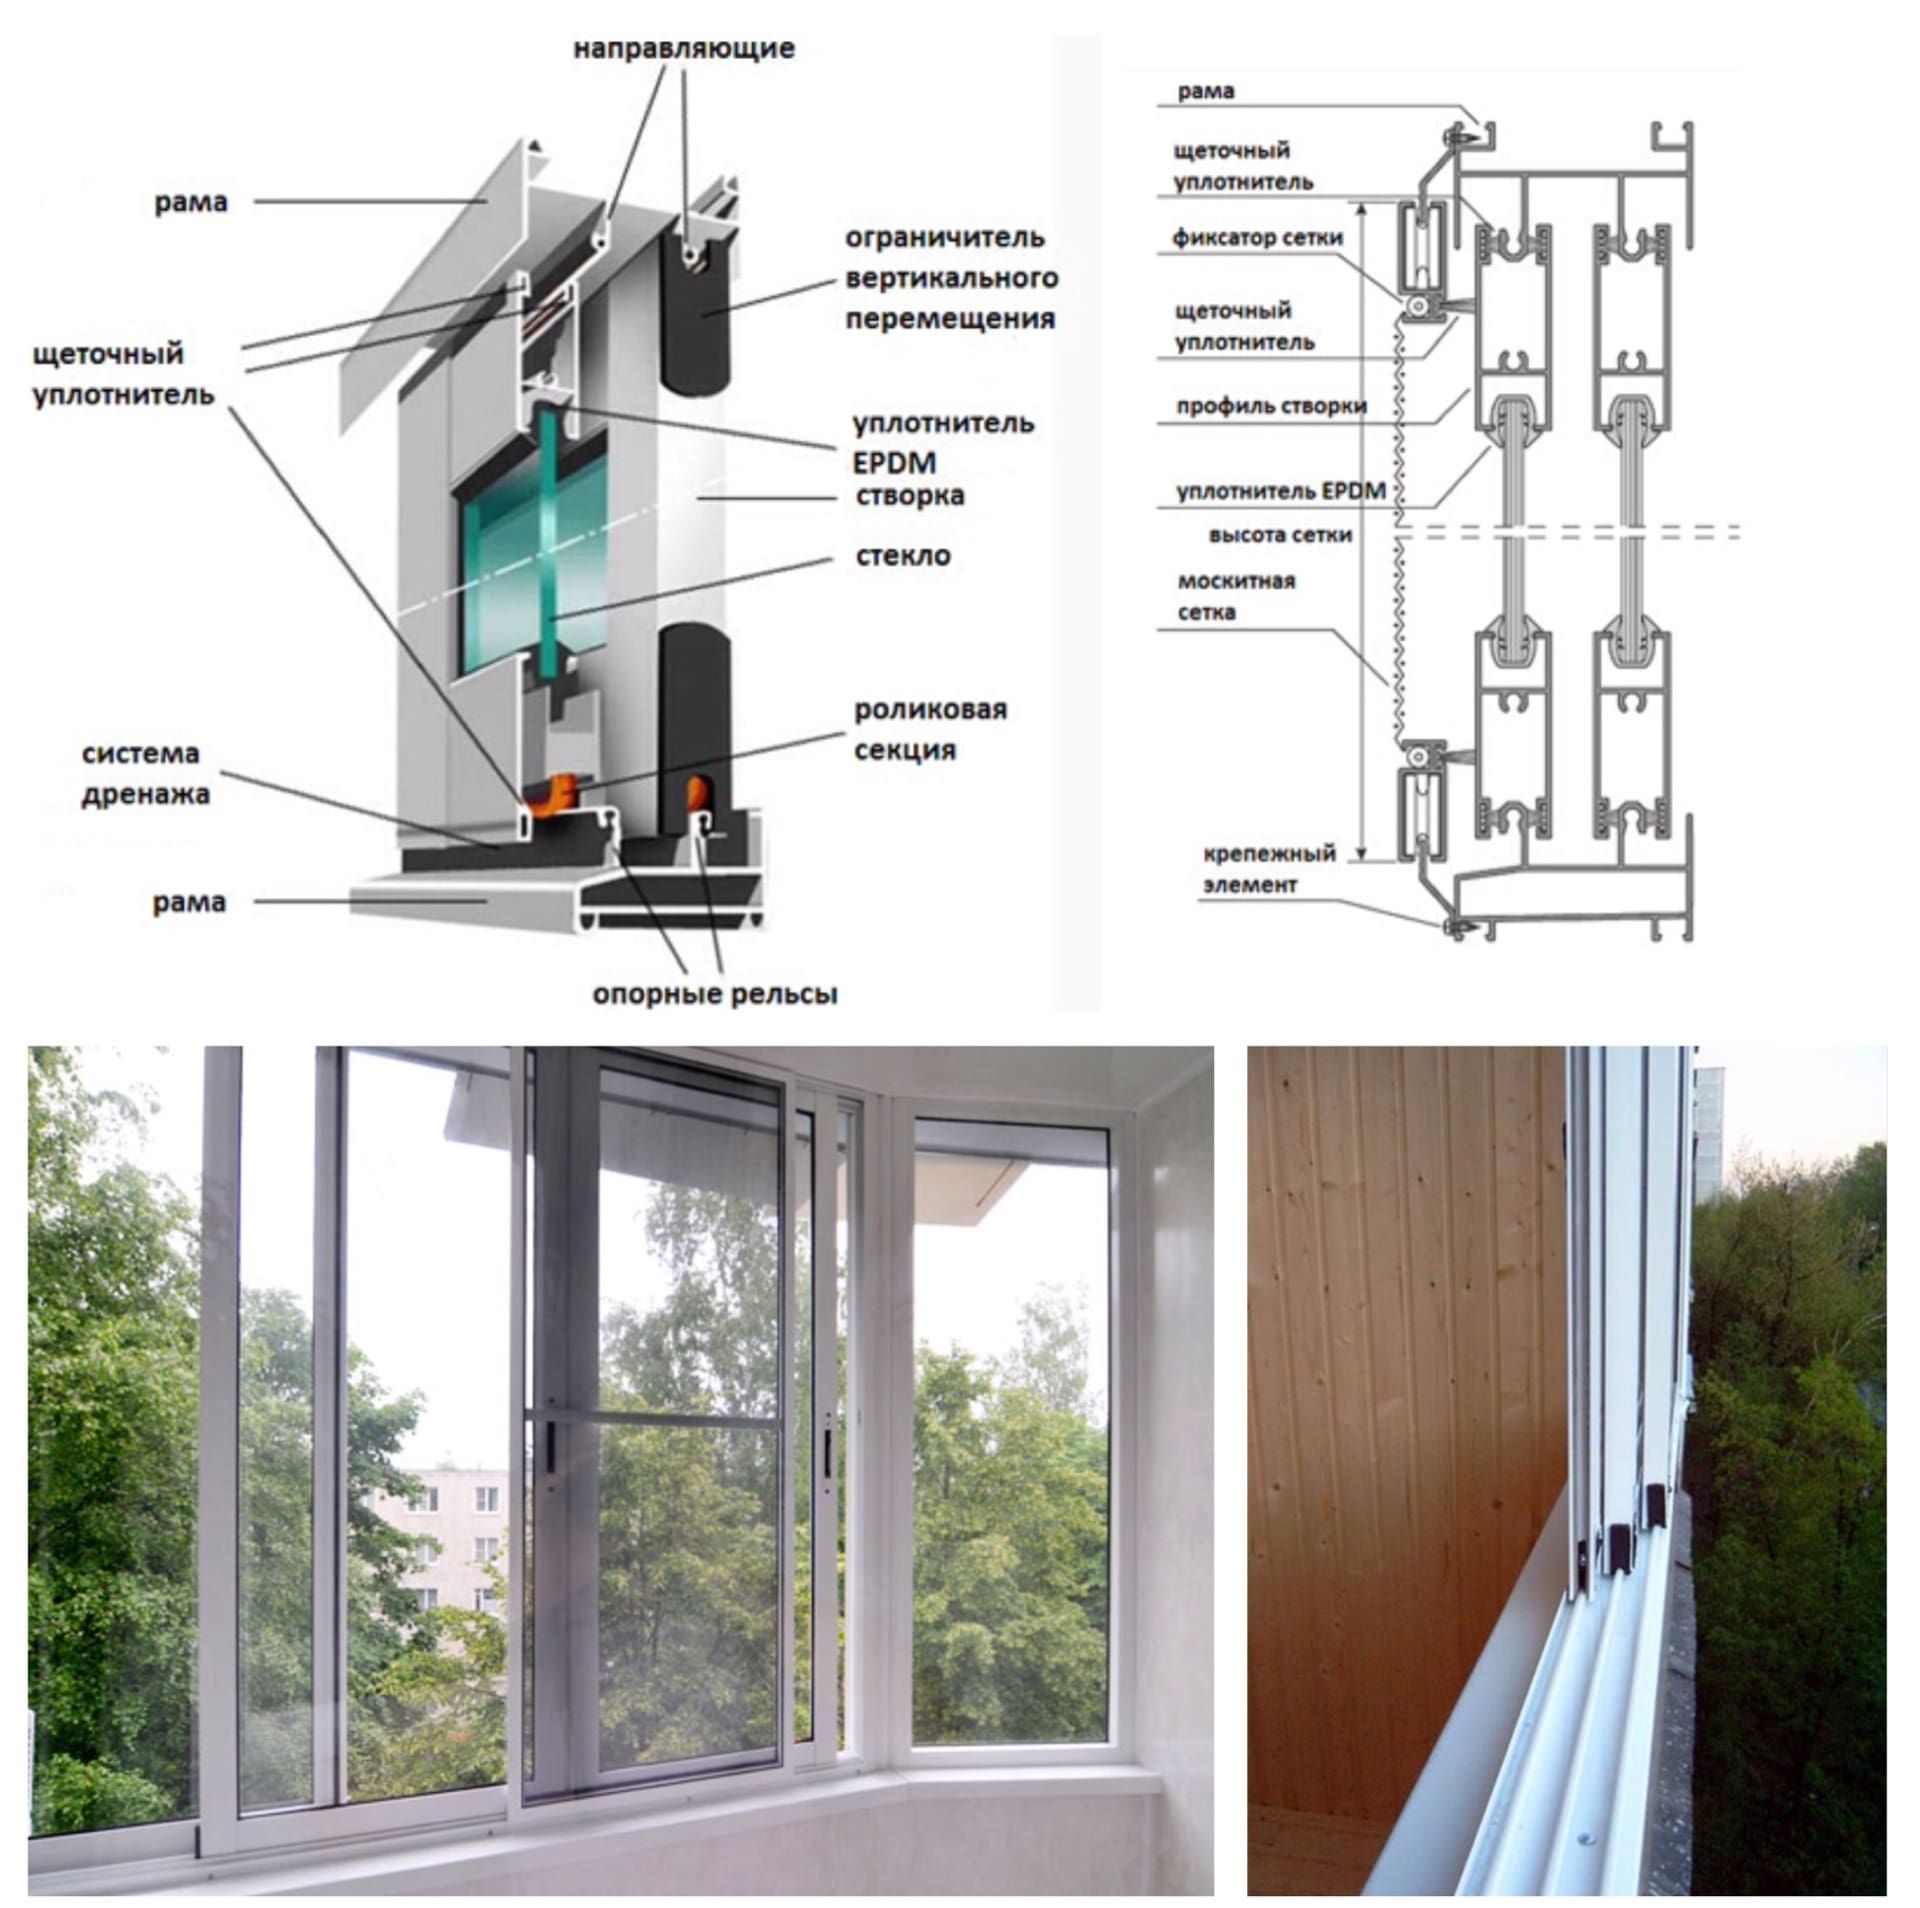 Монтаж алюминиевого остекления балконов и лоджий своими руками: особенности конструкции +фото и видео